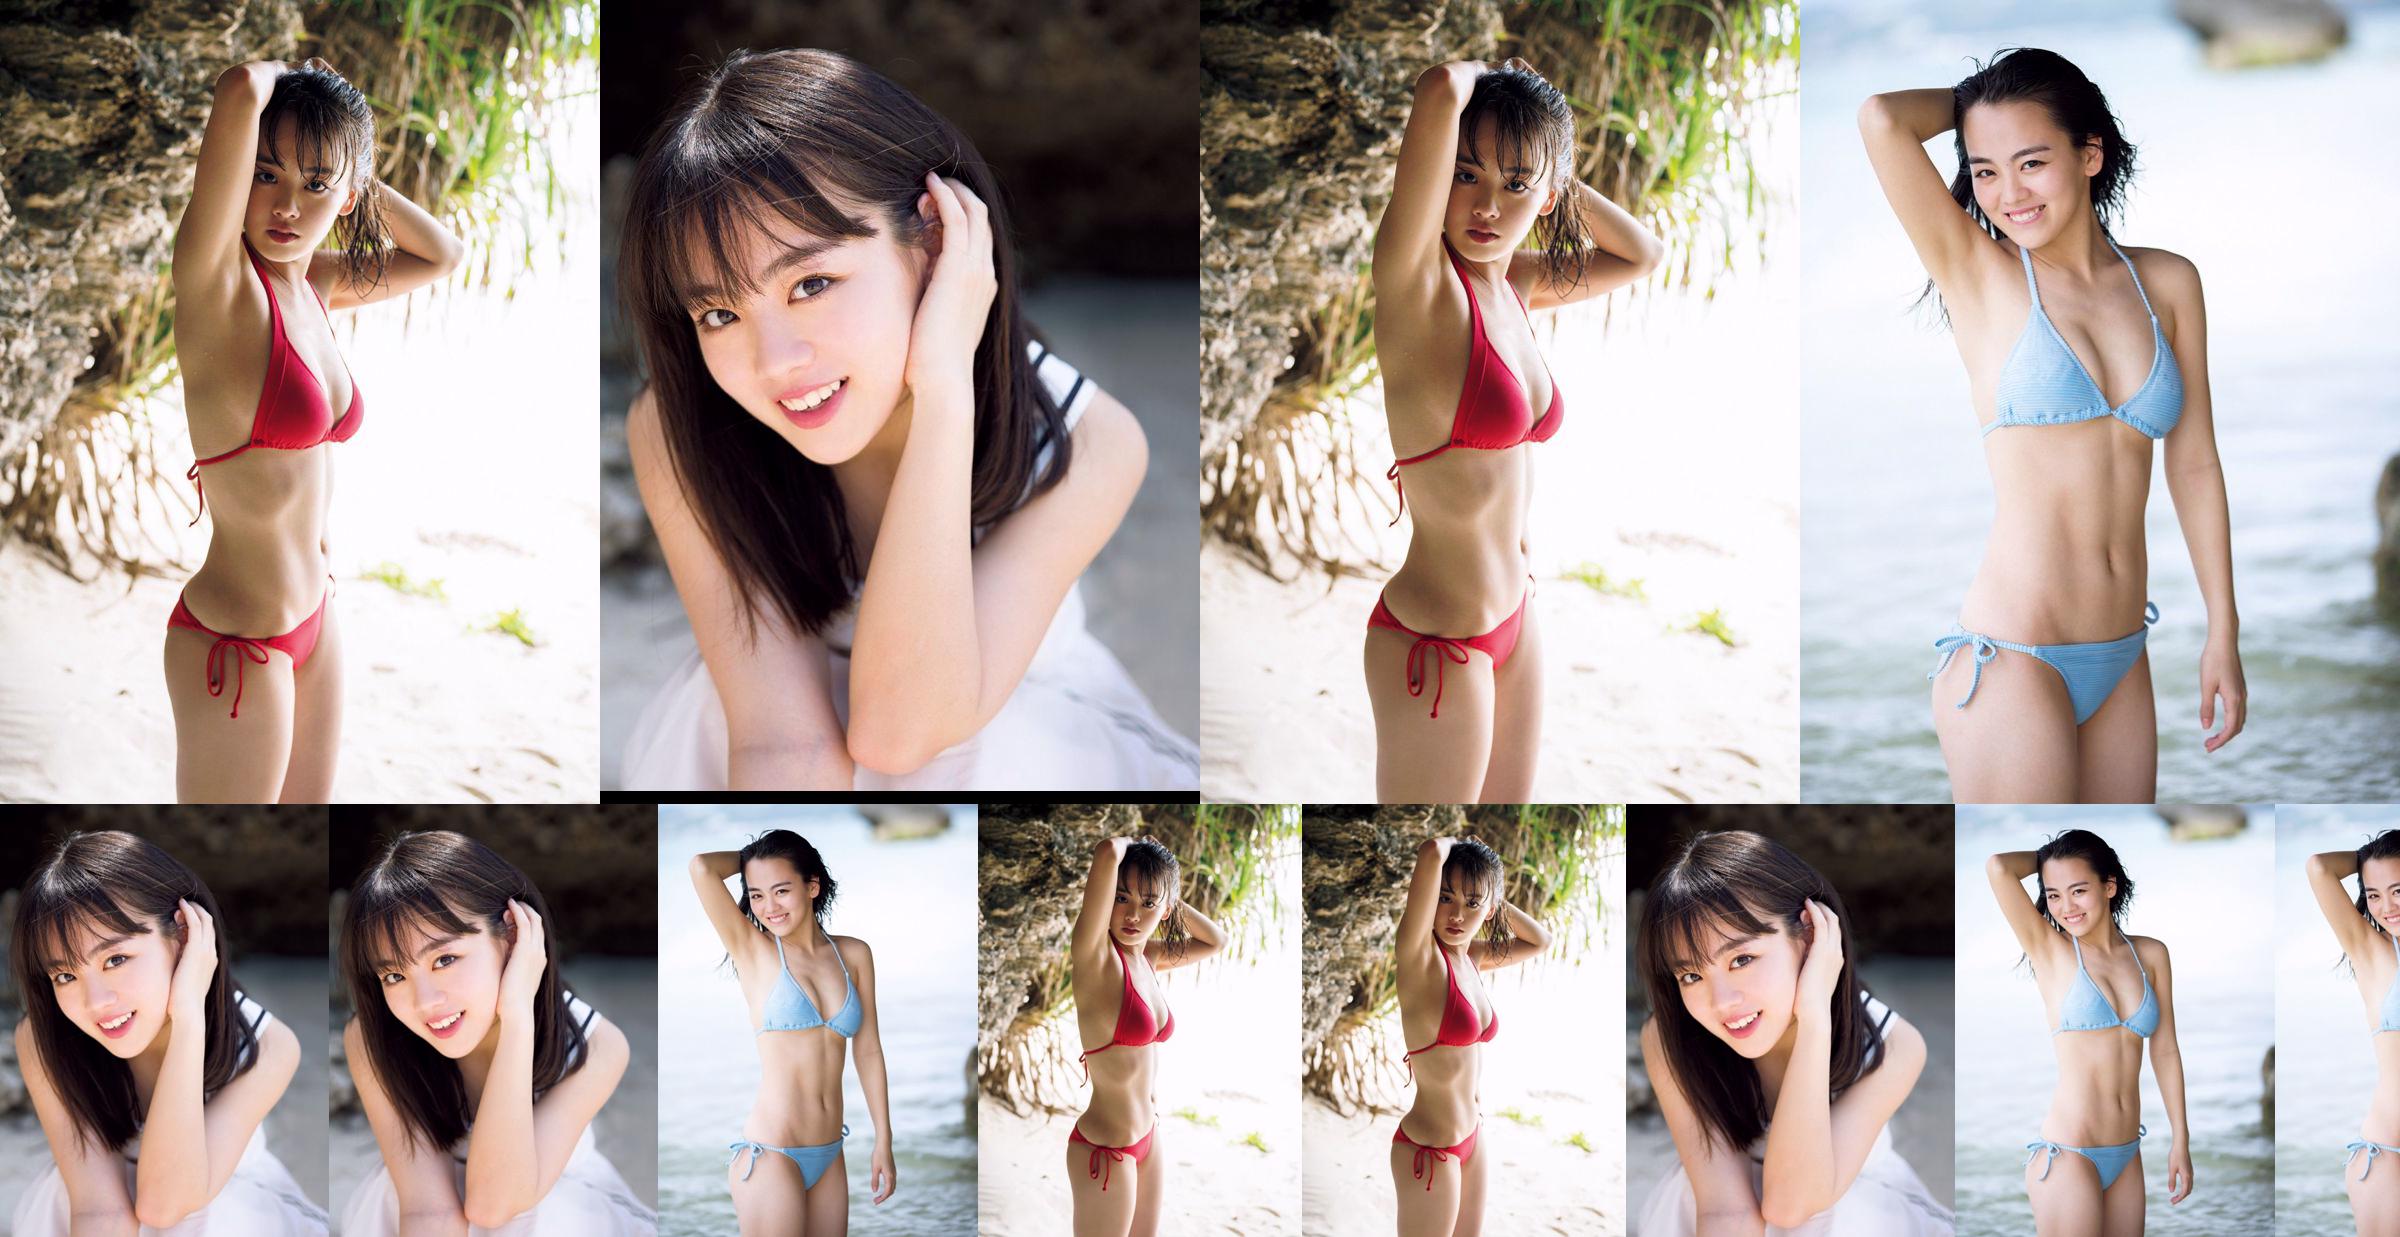 [VENERDI] Rikka Ihara << L'ex capitano della discoteca Tomioka High School debutta in bikini >> Foto No.a9daa5 Pagina 2